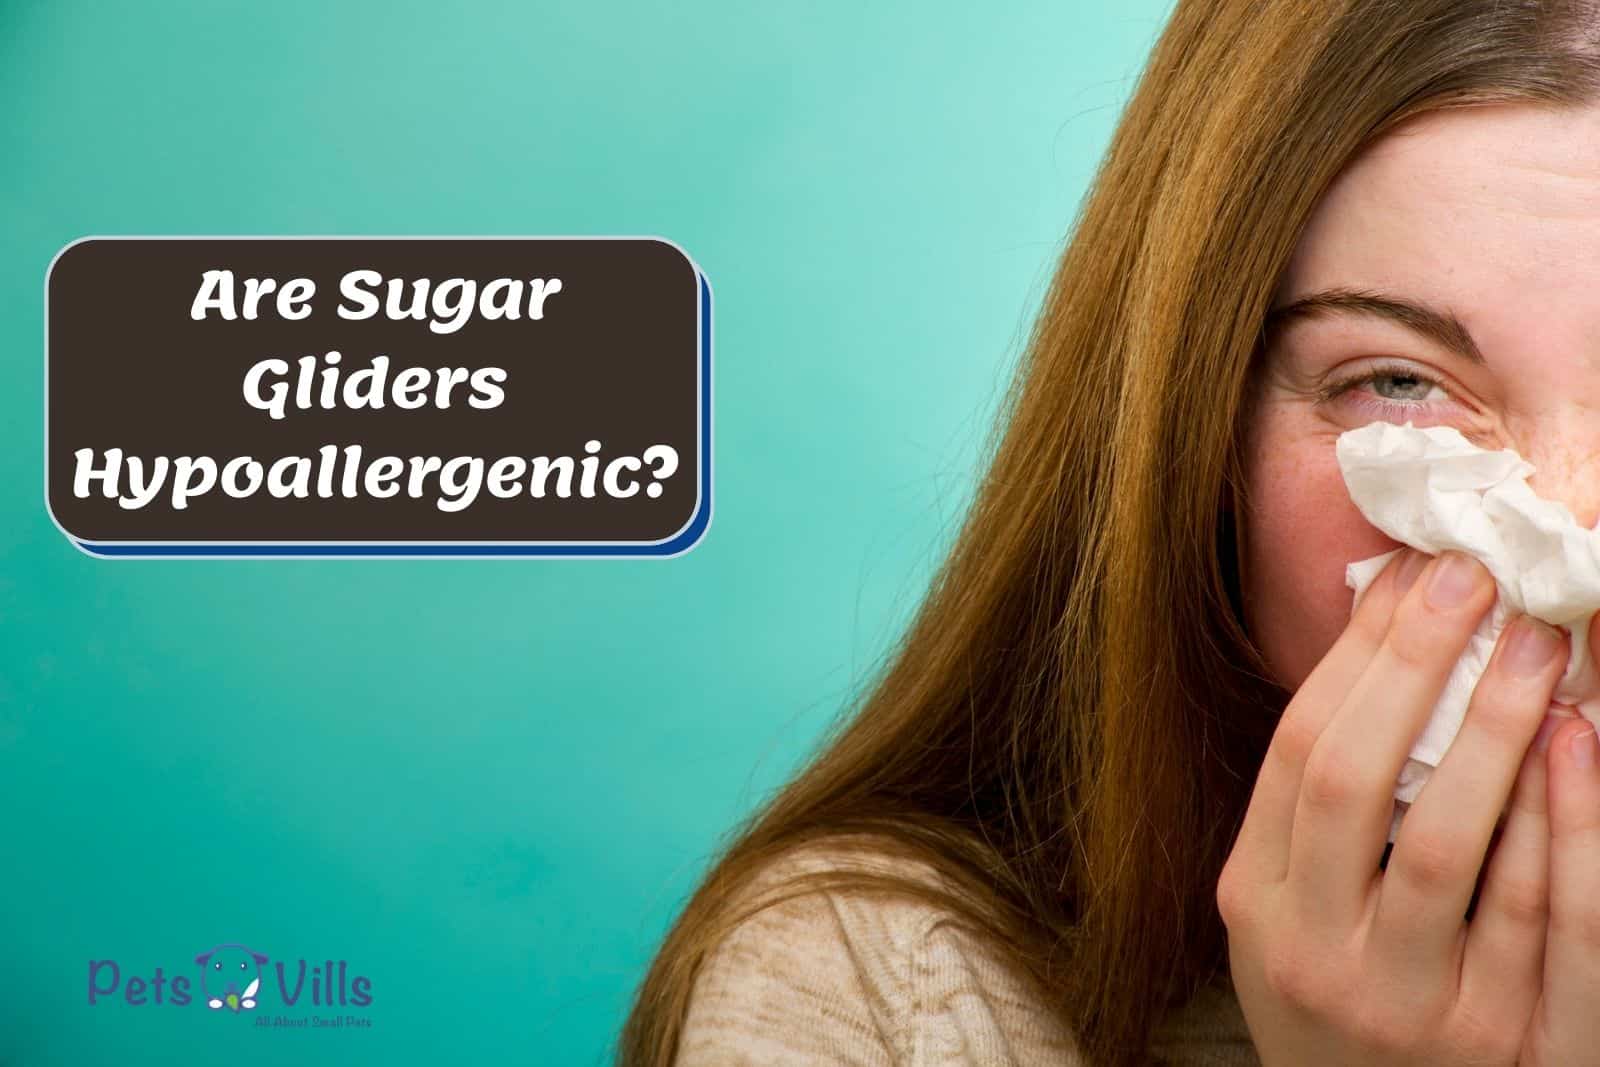 Are Sugar Gliders Hypoallergenic